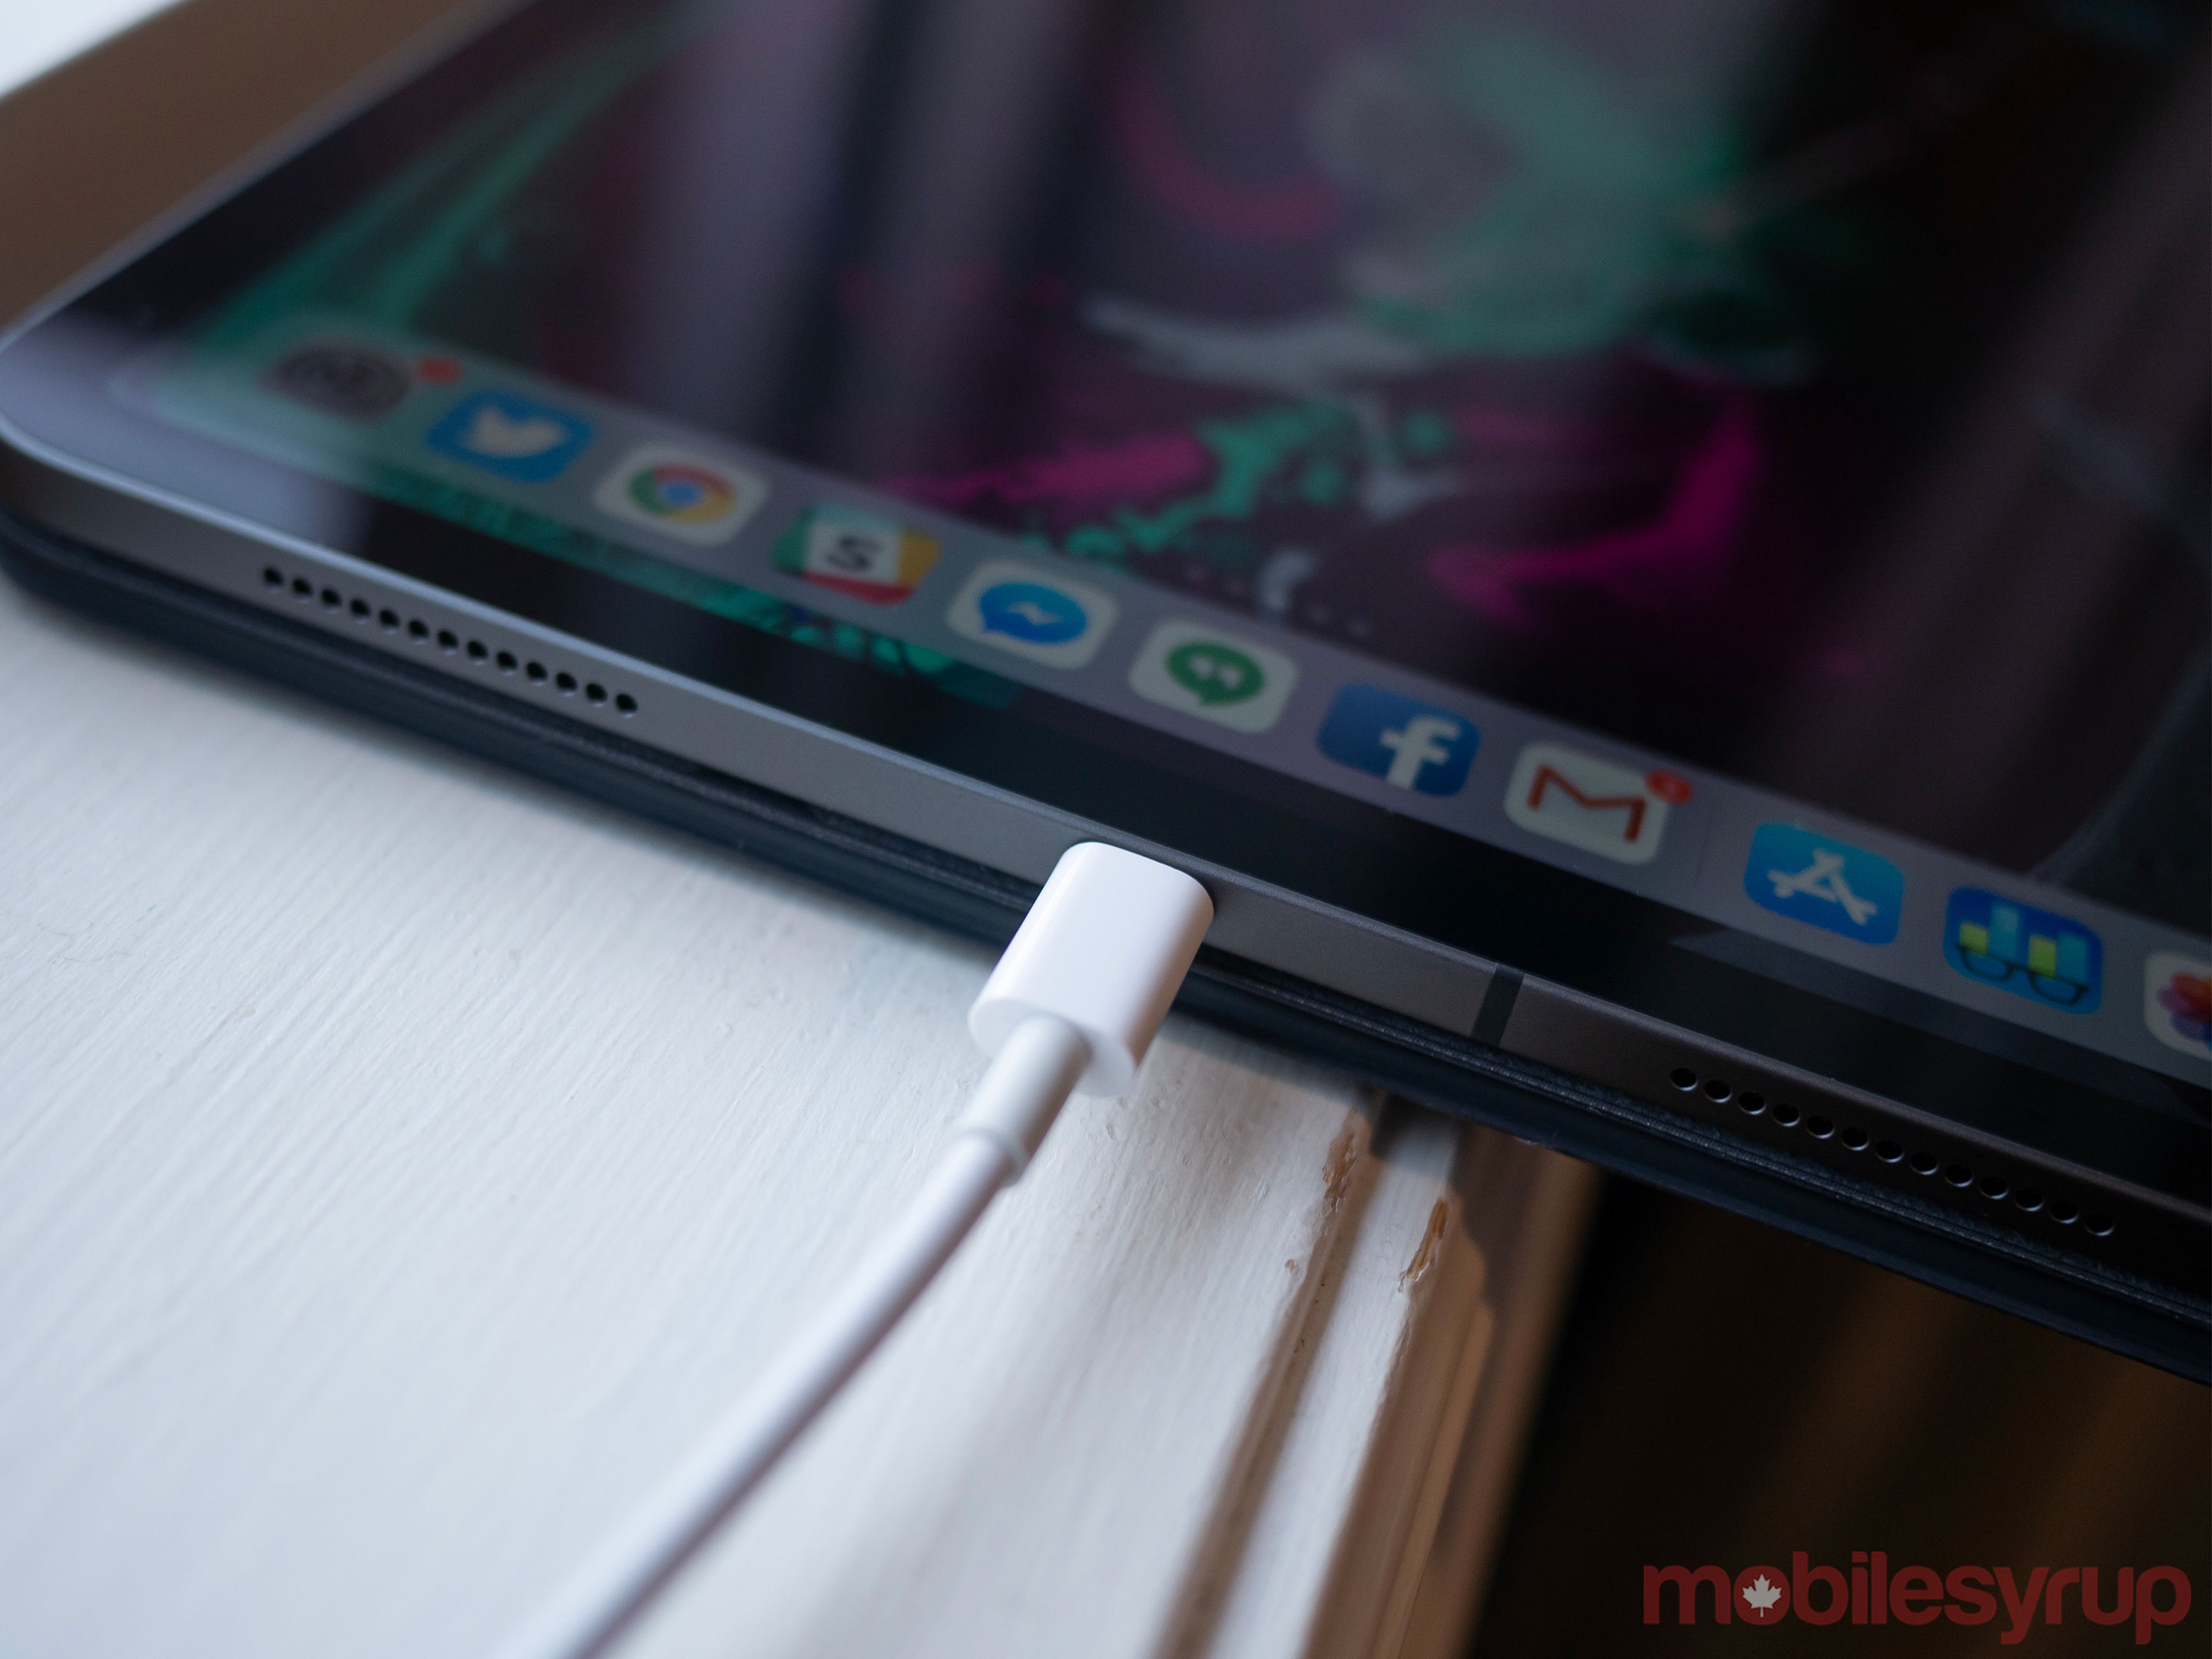 iPad Pro 2018 USB-C charging